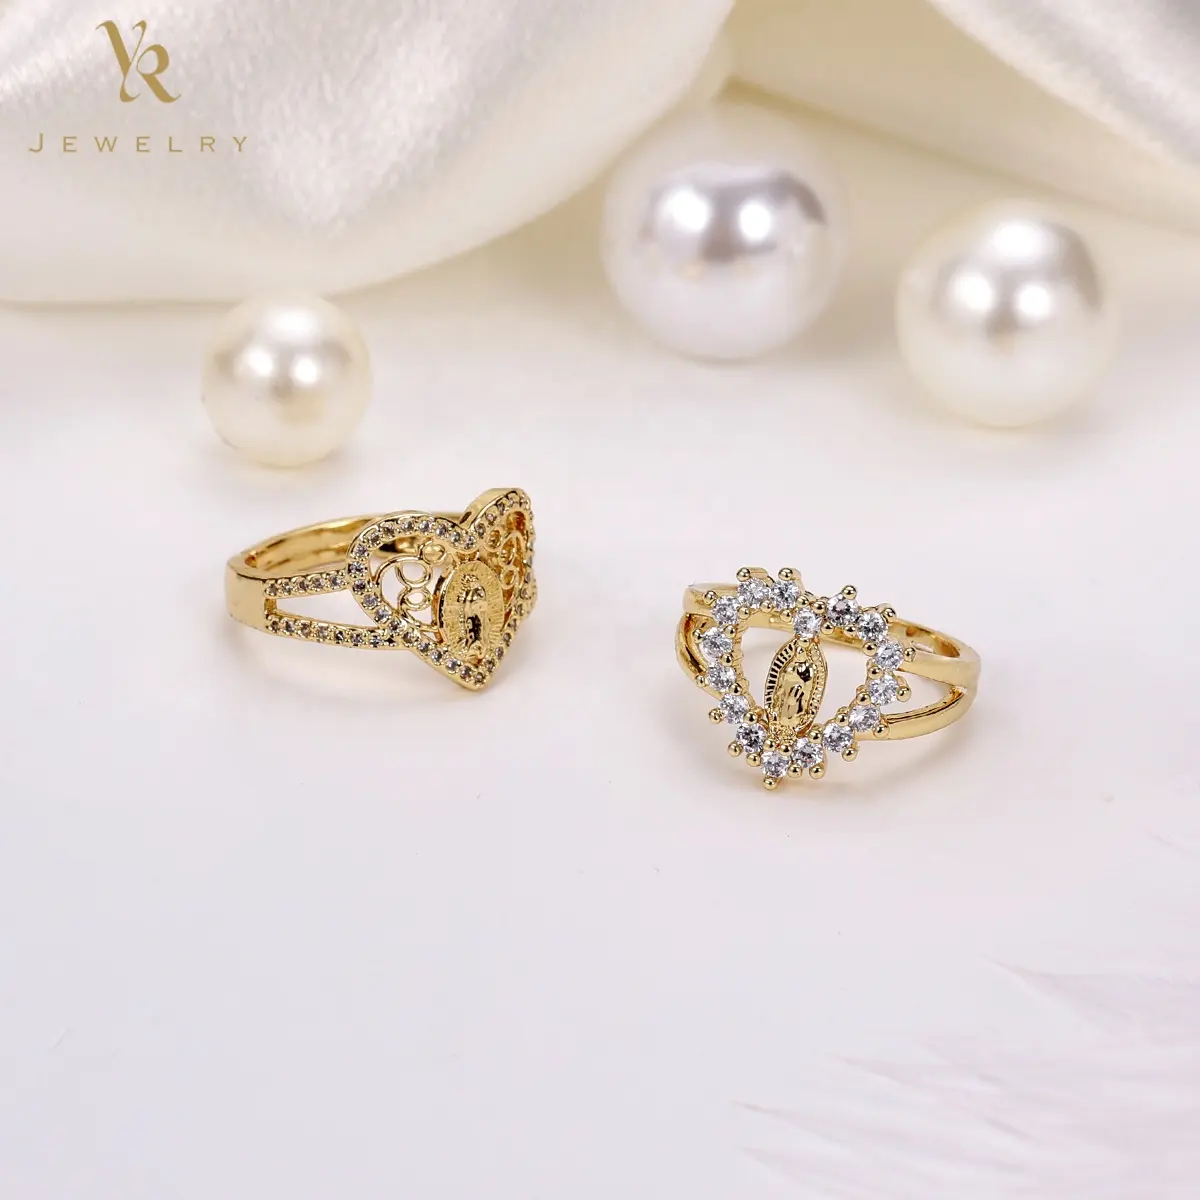 FR2057 Custom Brass Virgin Mary Crystal Religious Jewelry wedding Lover Heart Diamond Gold Ring For Men 24k